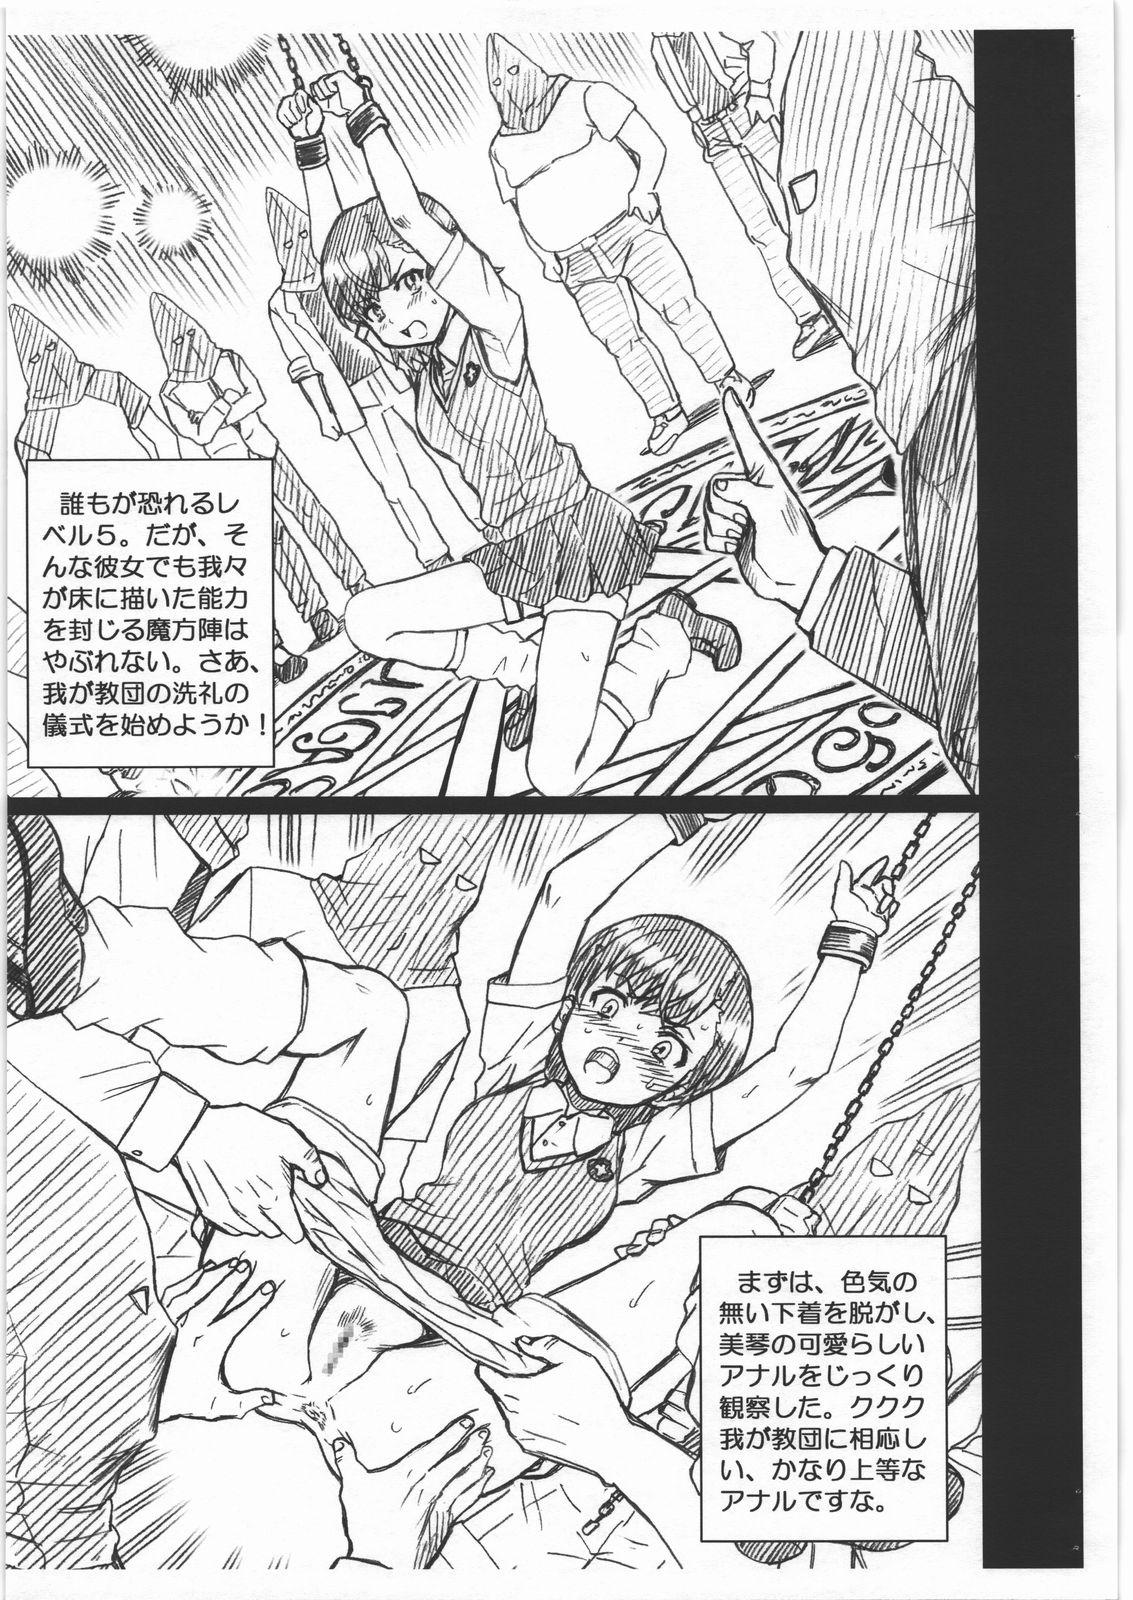 Speculum KINSYO FILE Misaka Mikoto Gazoushuu - Toaru majutsu no index Pain - Page 3